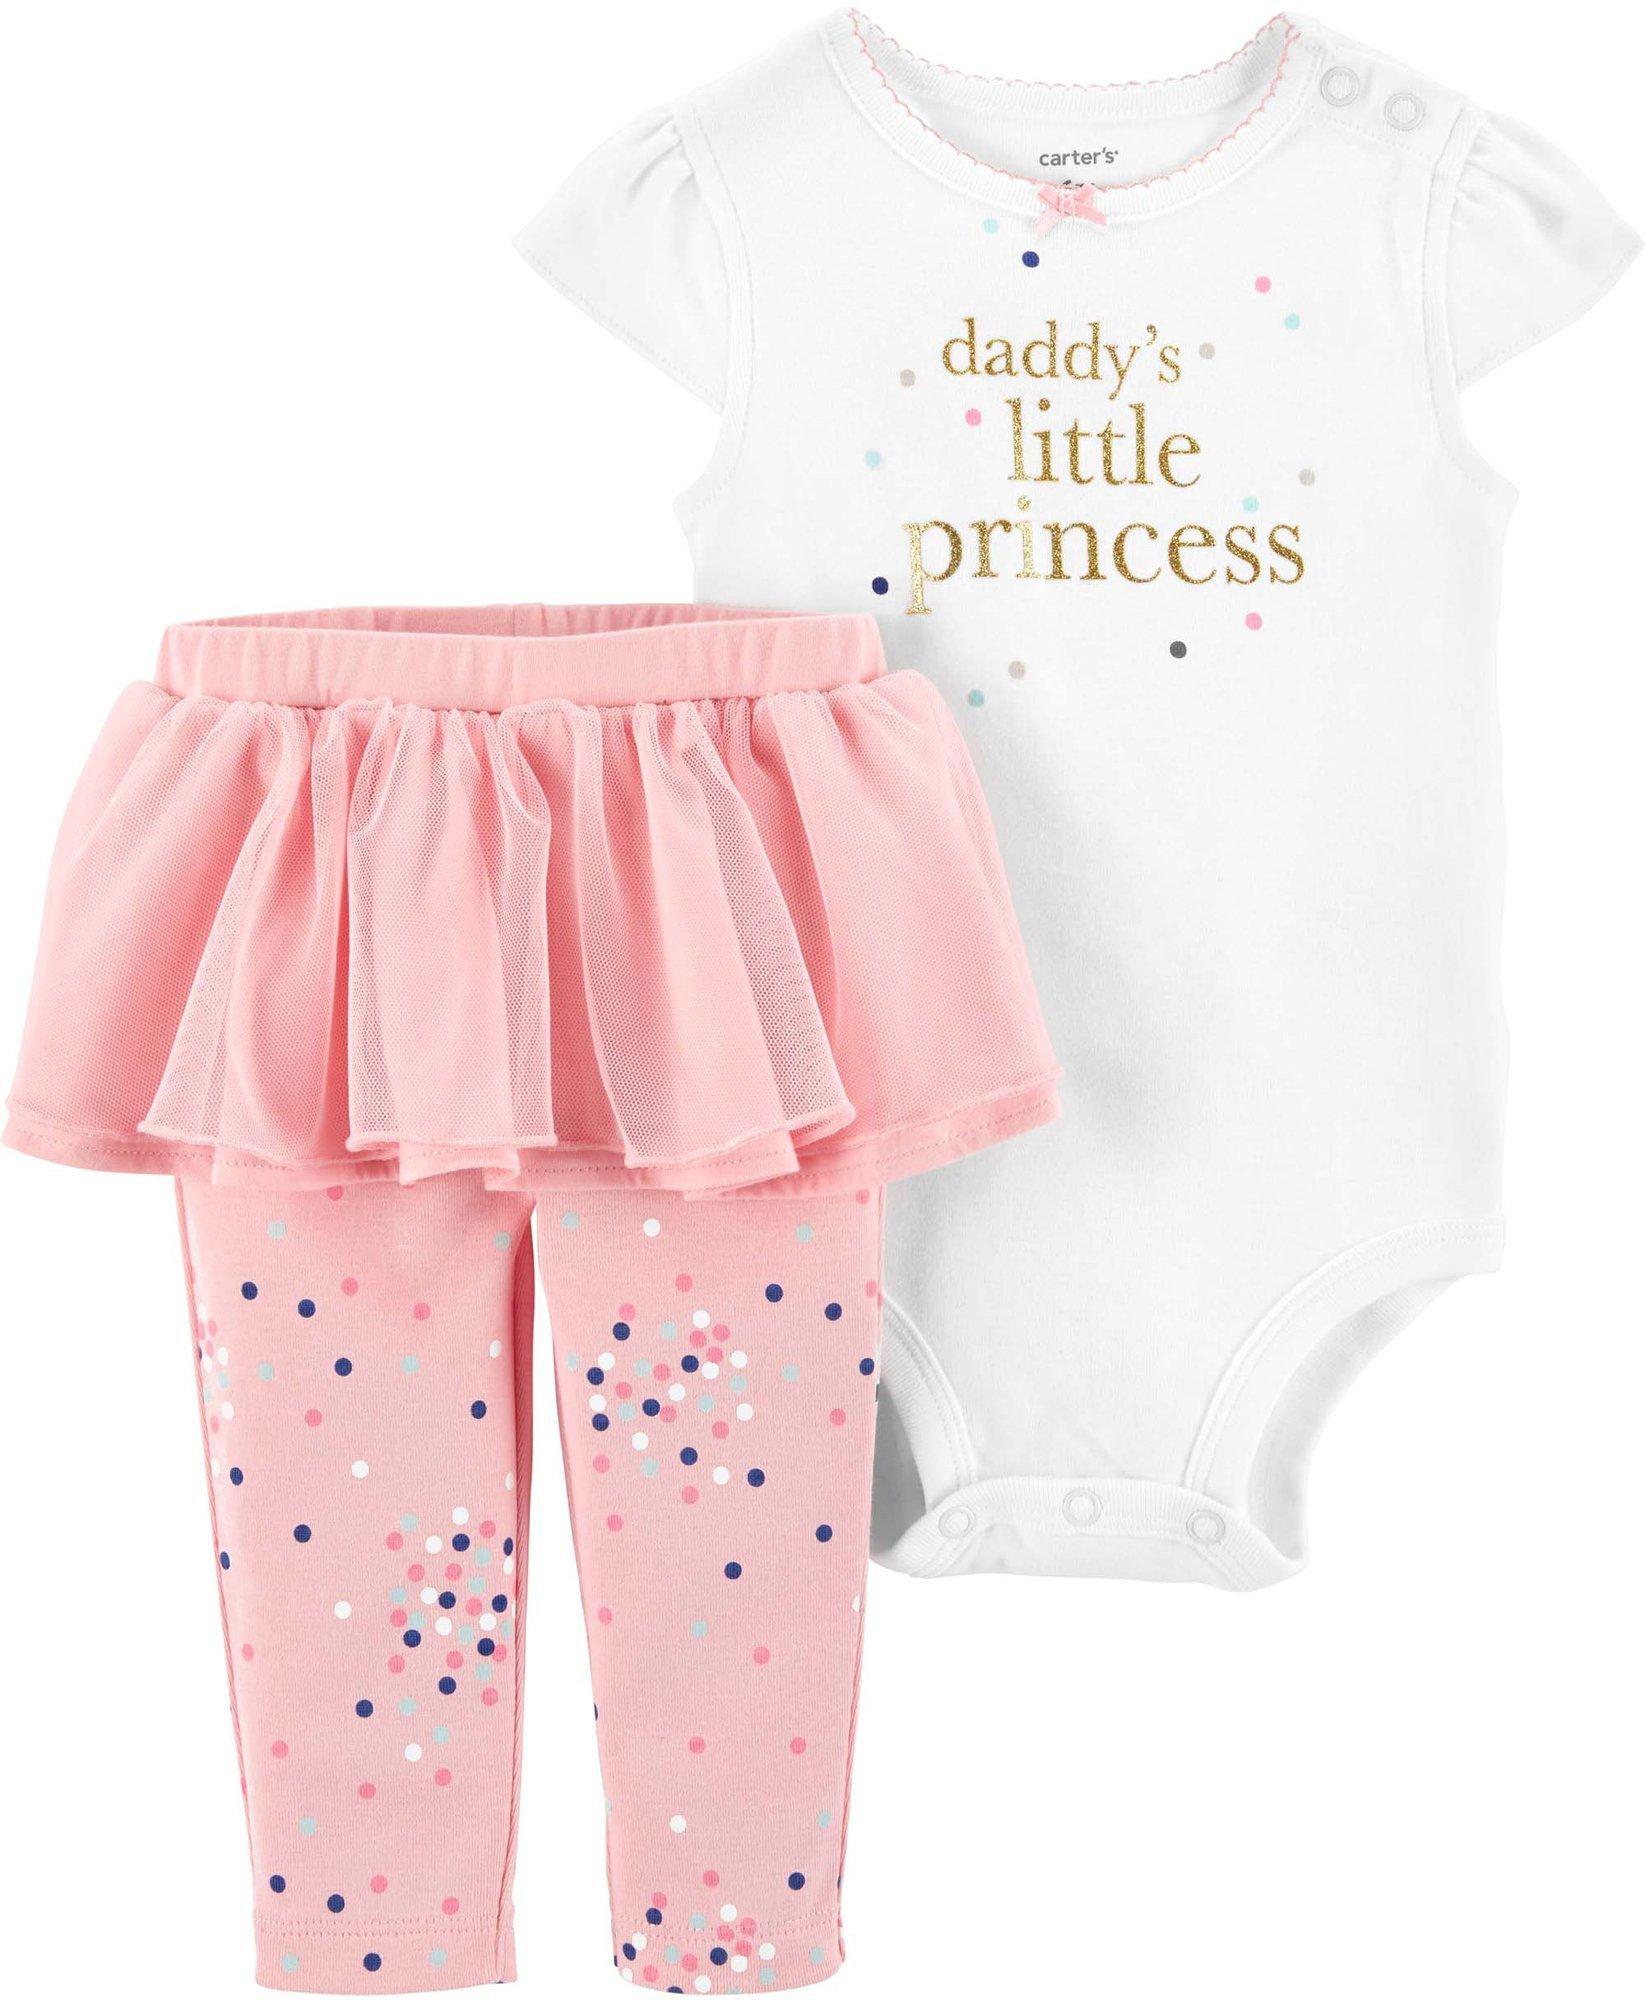 Baby Clothes | Clothes for Baby Boy & Girl | Bealls Florida